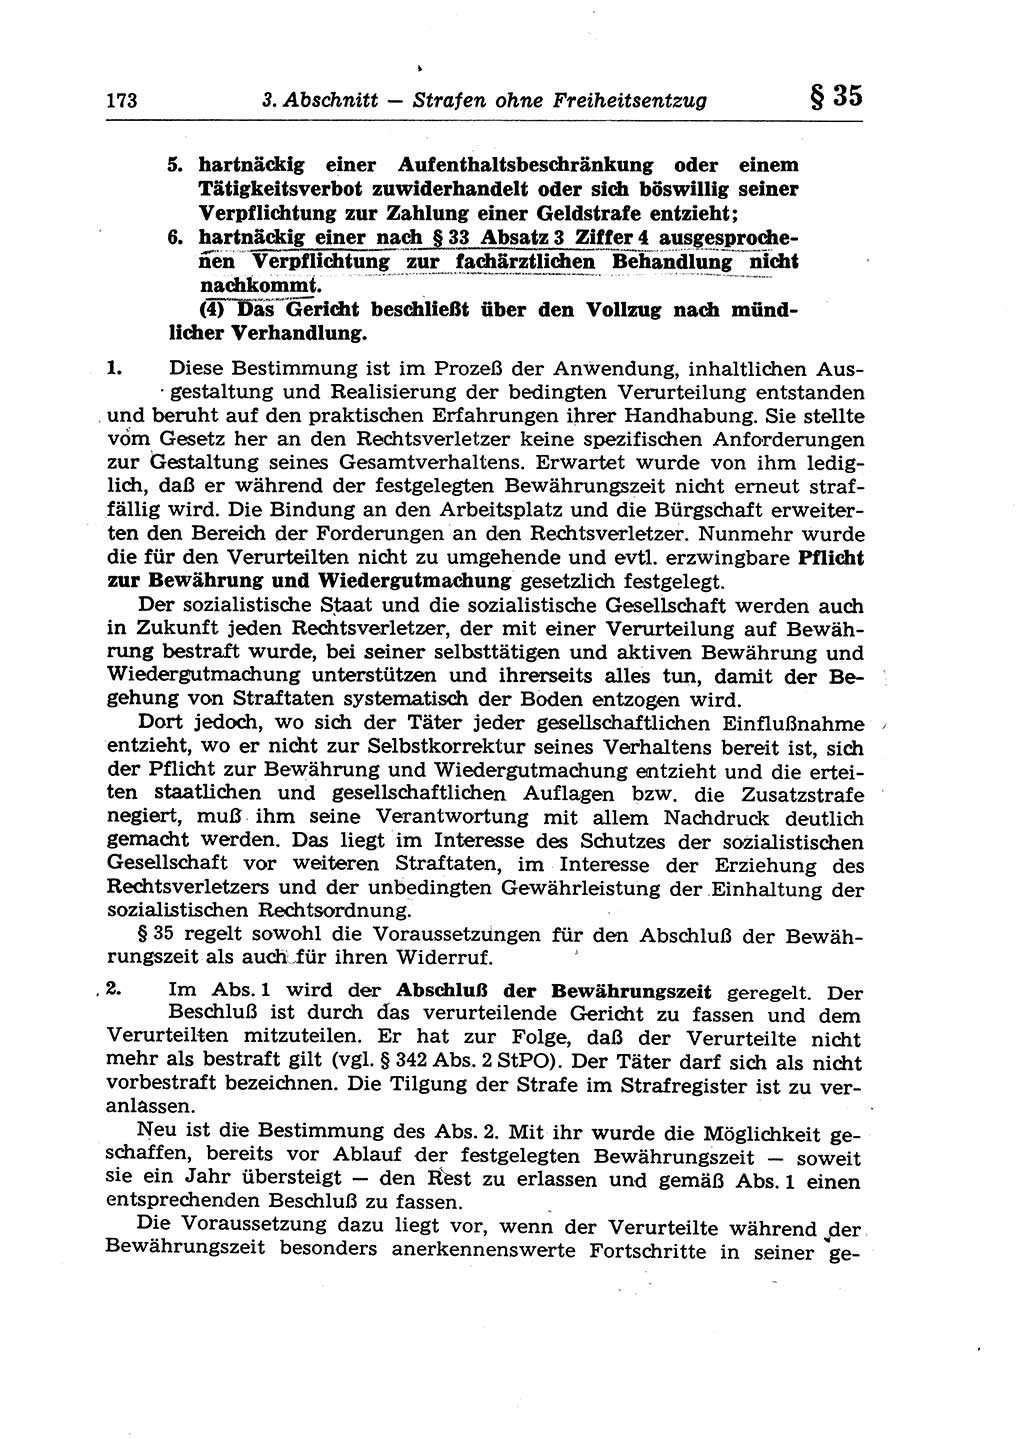 Strafrecht der Deutschen Demokratischen Republik (DDR), Lehrkommentar zum Strafgesetzbuch (StGB), Allgemeiner Teil 1970, Seite 173 (Strafr. DDR Lehrkomm. StGB AT 1970, S. 173)